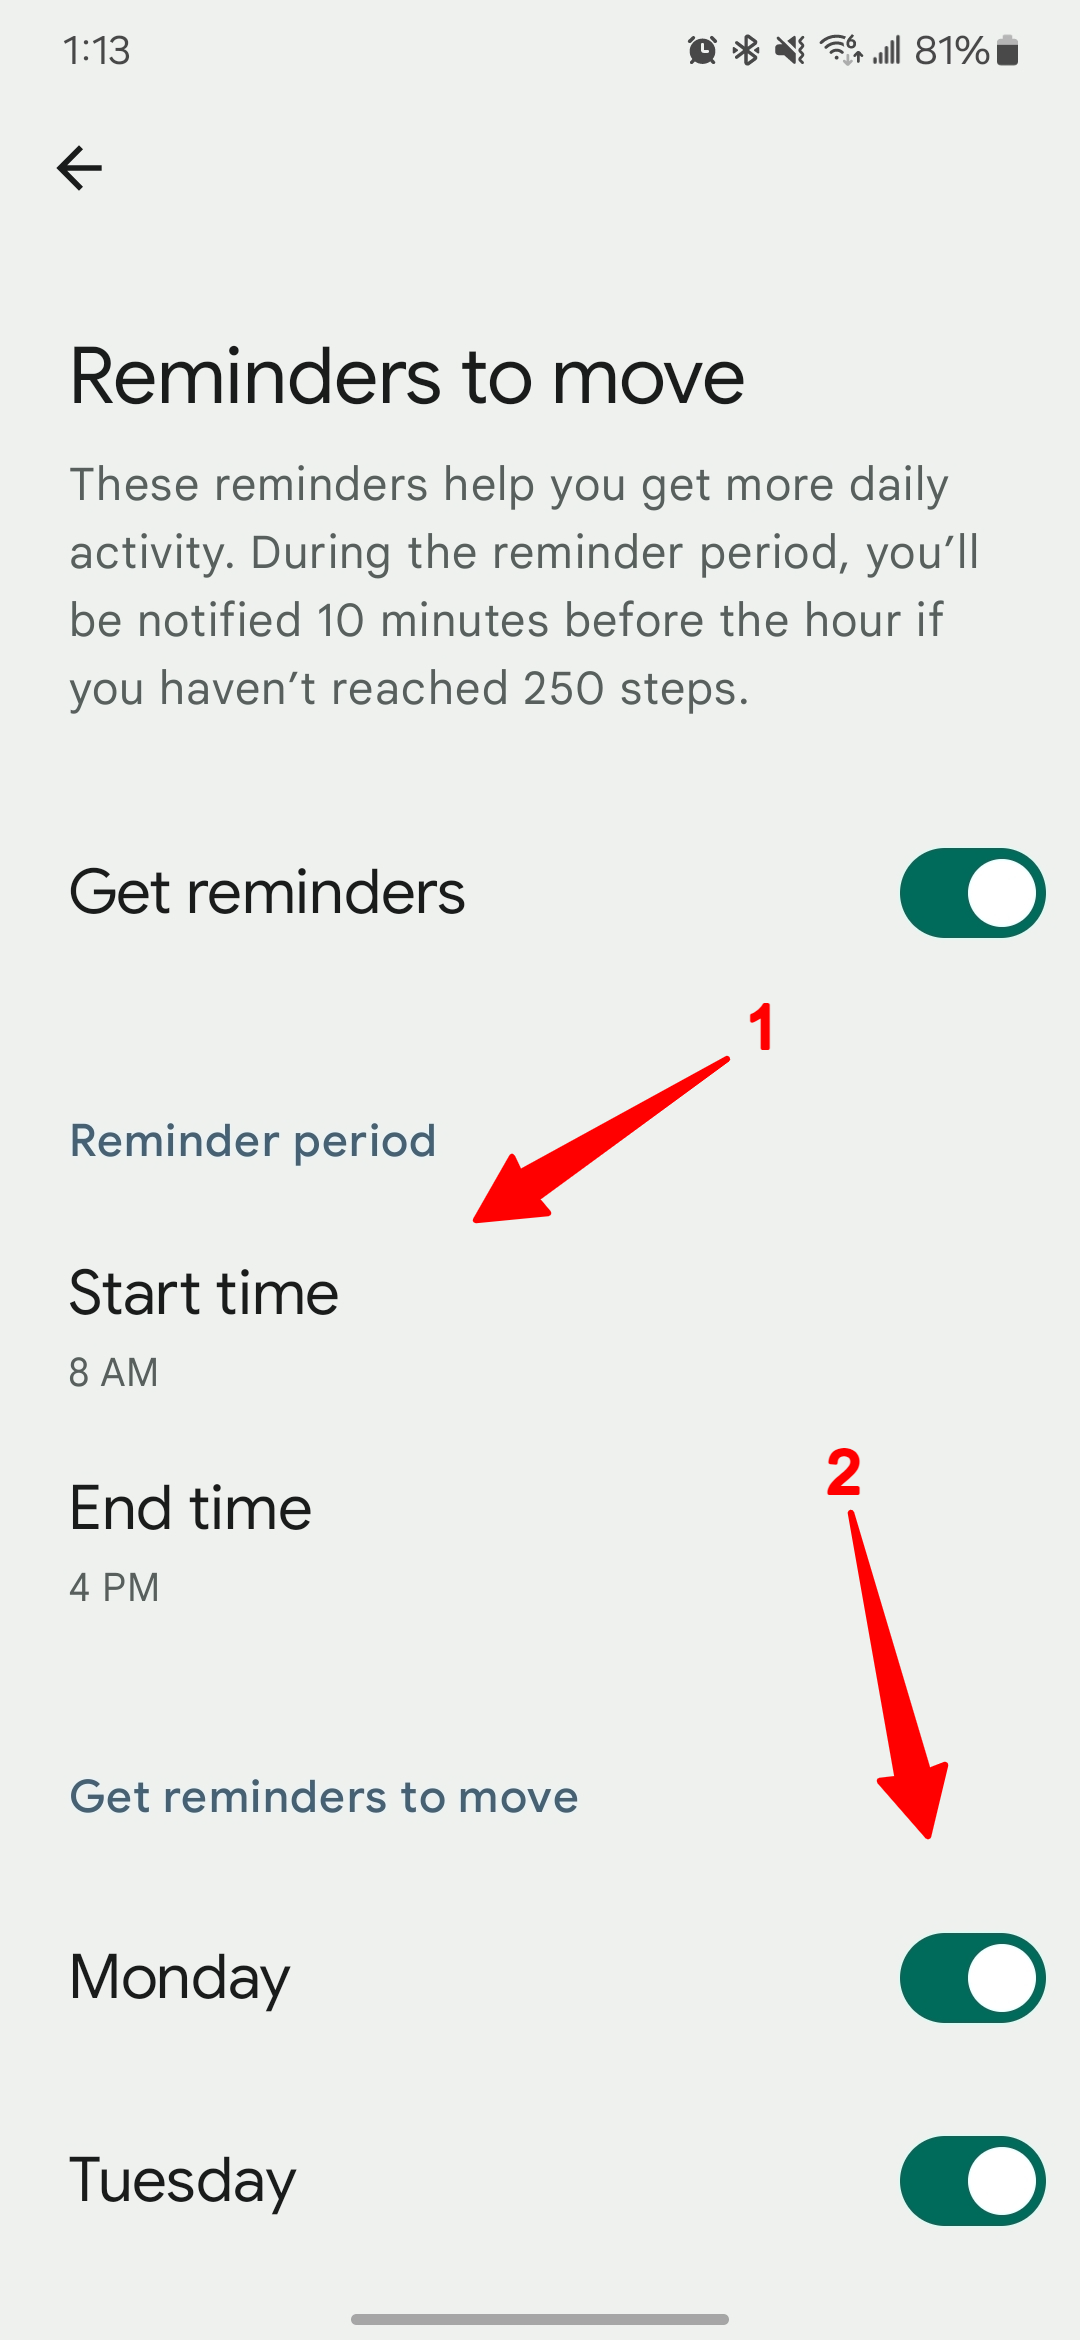 Captura de tela do aplicativo Fitbit com setas apontando para o horário de início e os dias da semana para a movimentação dos lembretes.